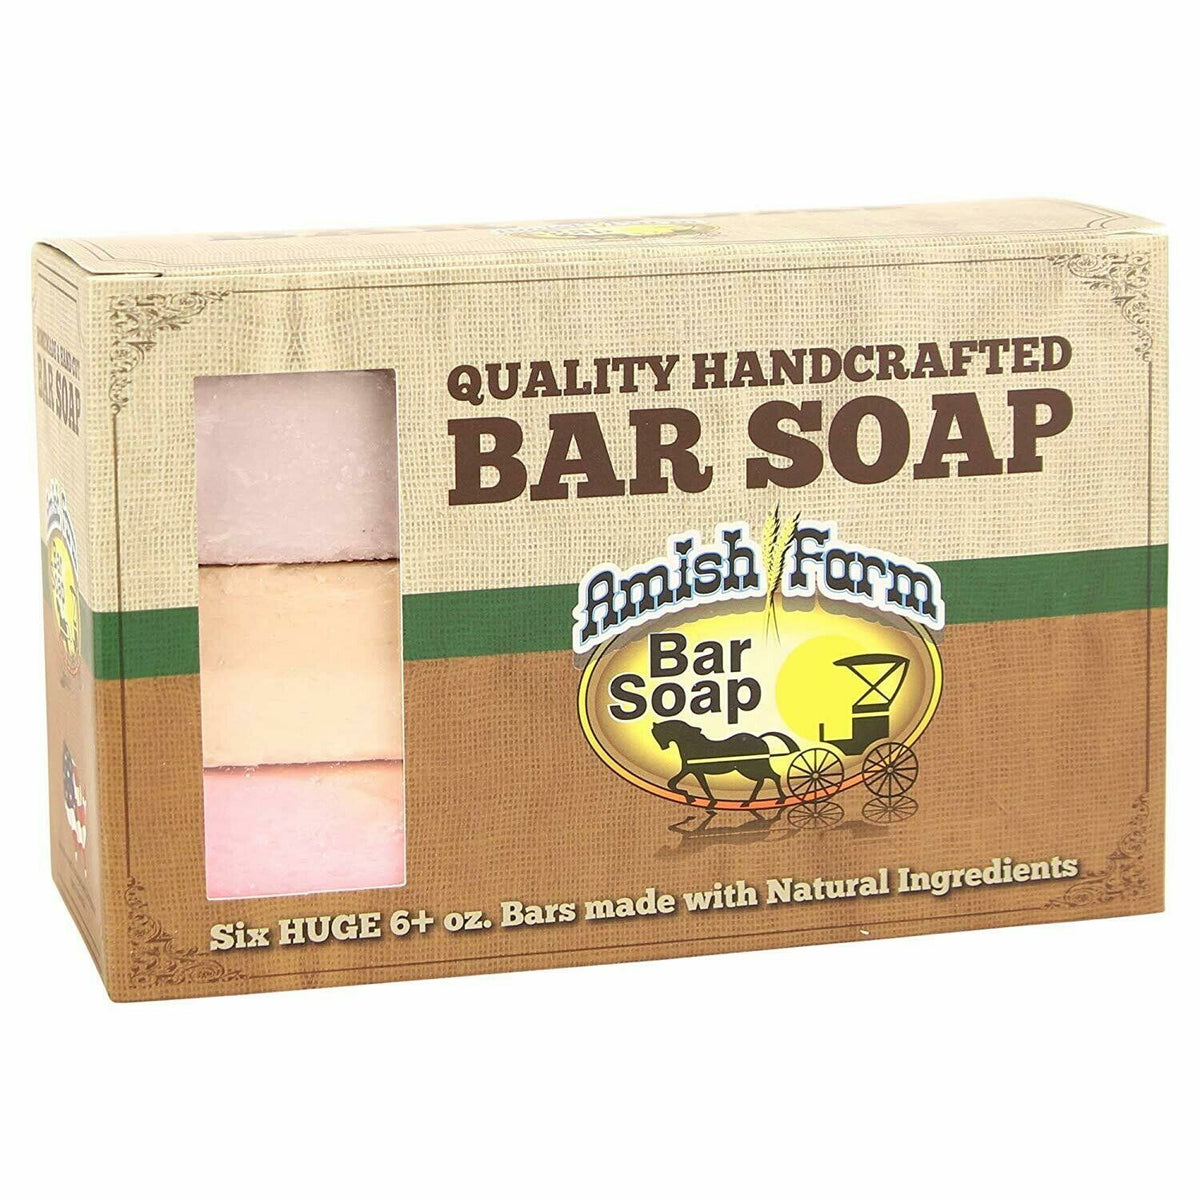 2 Bags Amish Farm Bar Soap (10 Bars Total) (each Bar approx 3”x3